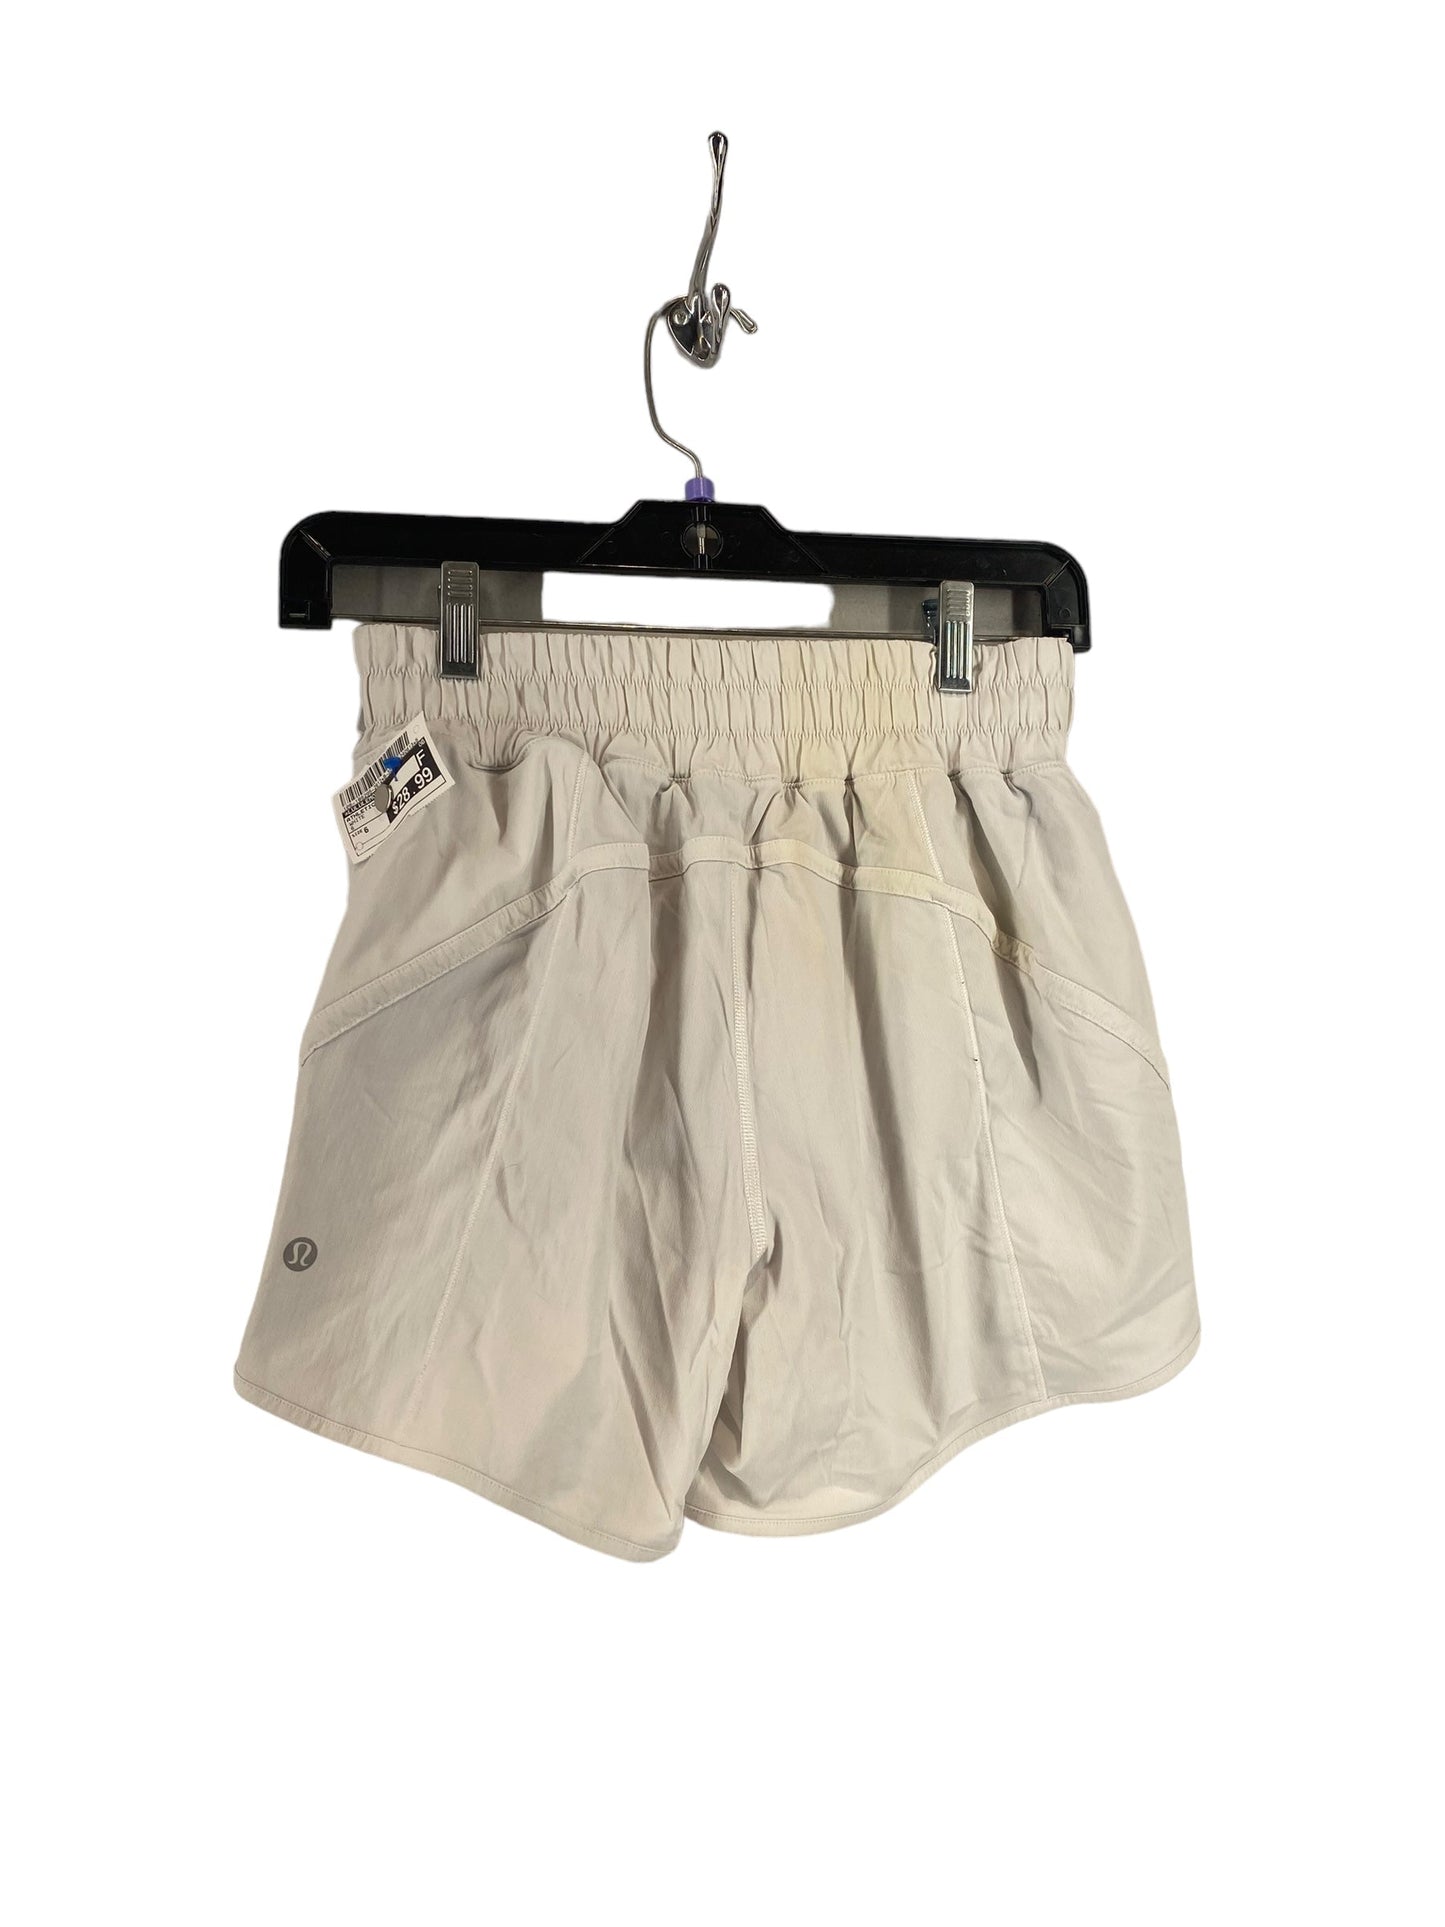 White Athletic Shorts Lululemon, Size 6